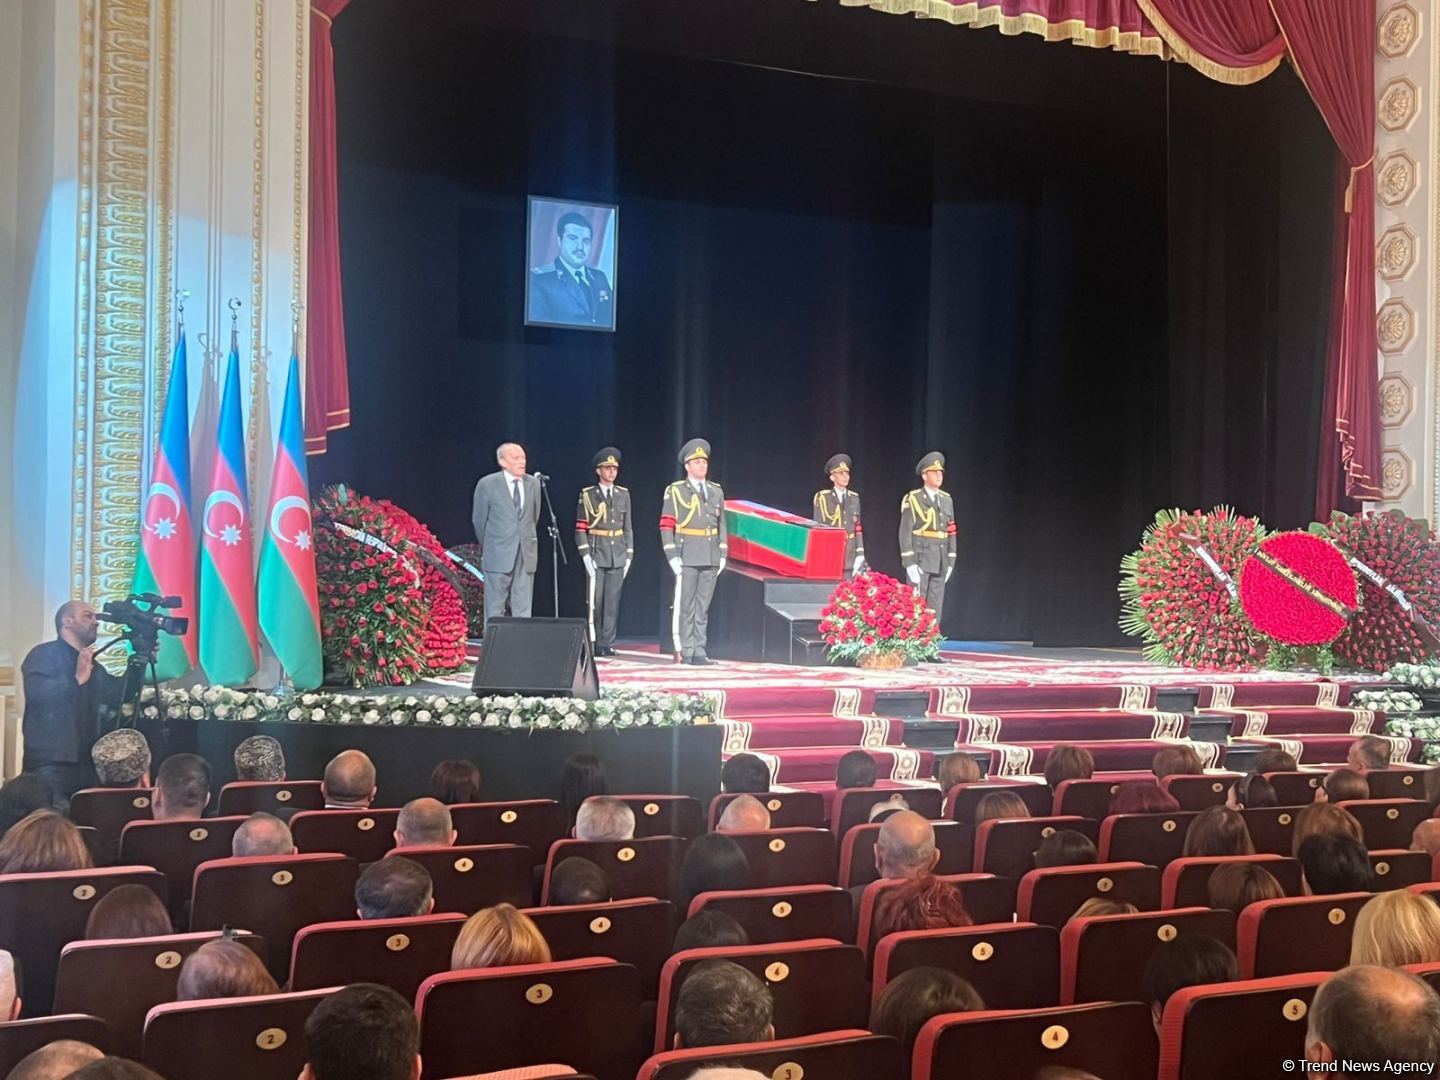 Национальный герой Азербайджана Риад Ахмедов похоронен на Второй Аллее почетного захоронения в Баку (ФОТО)